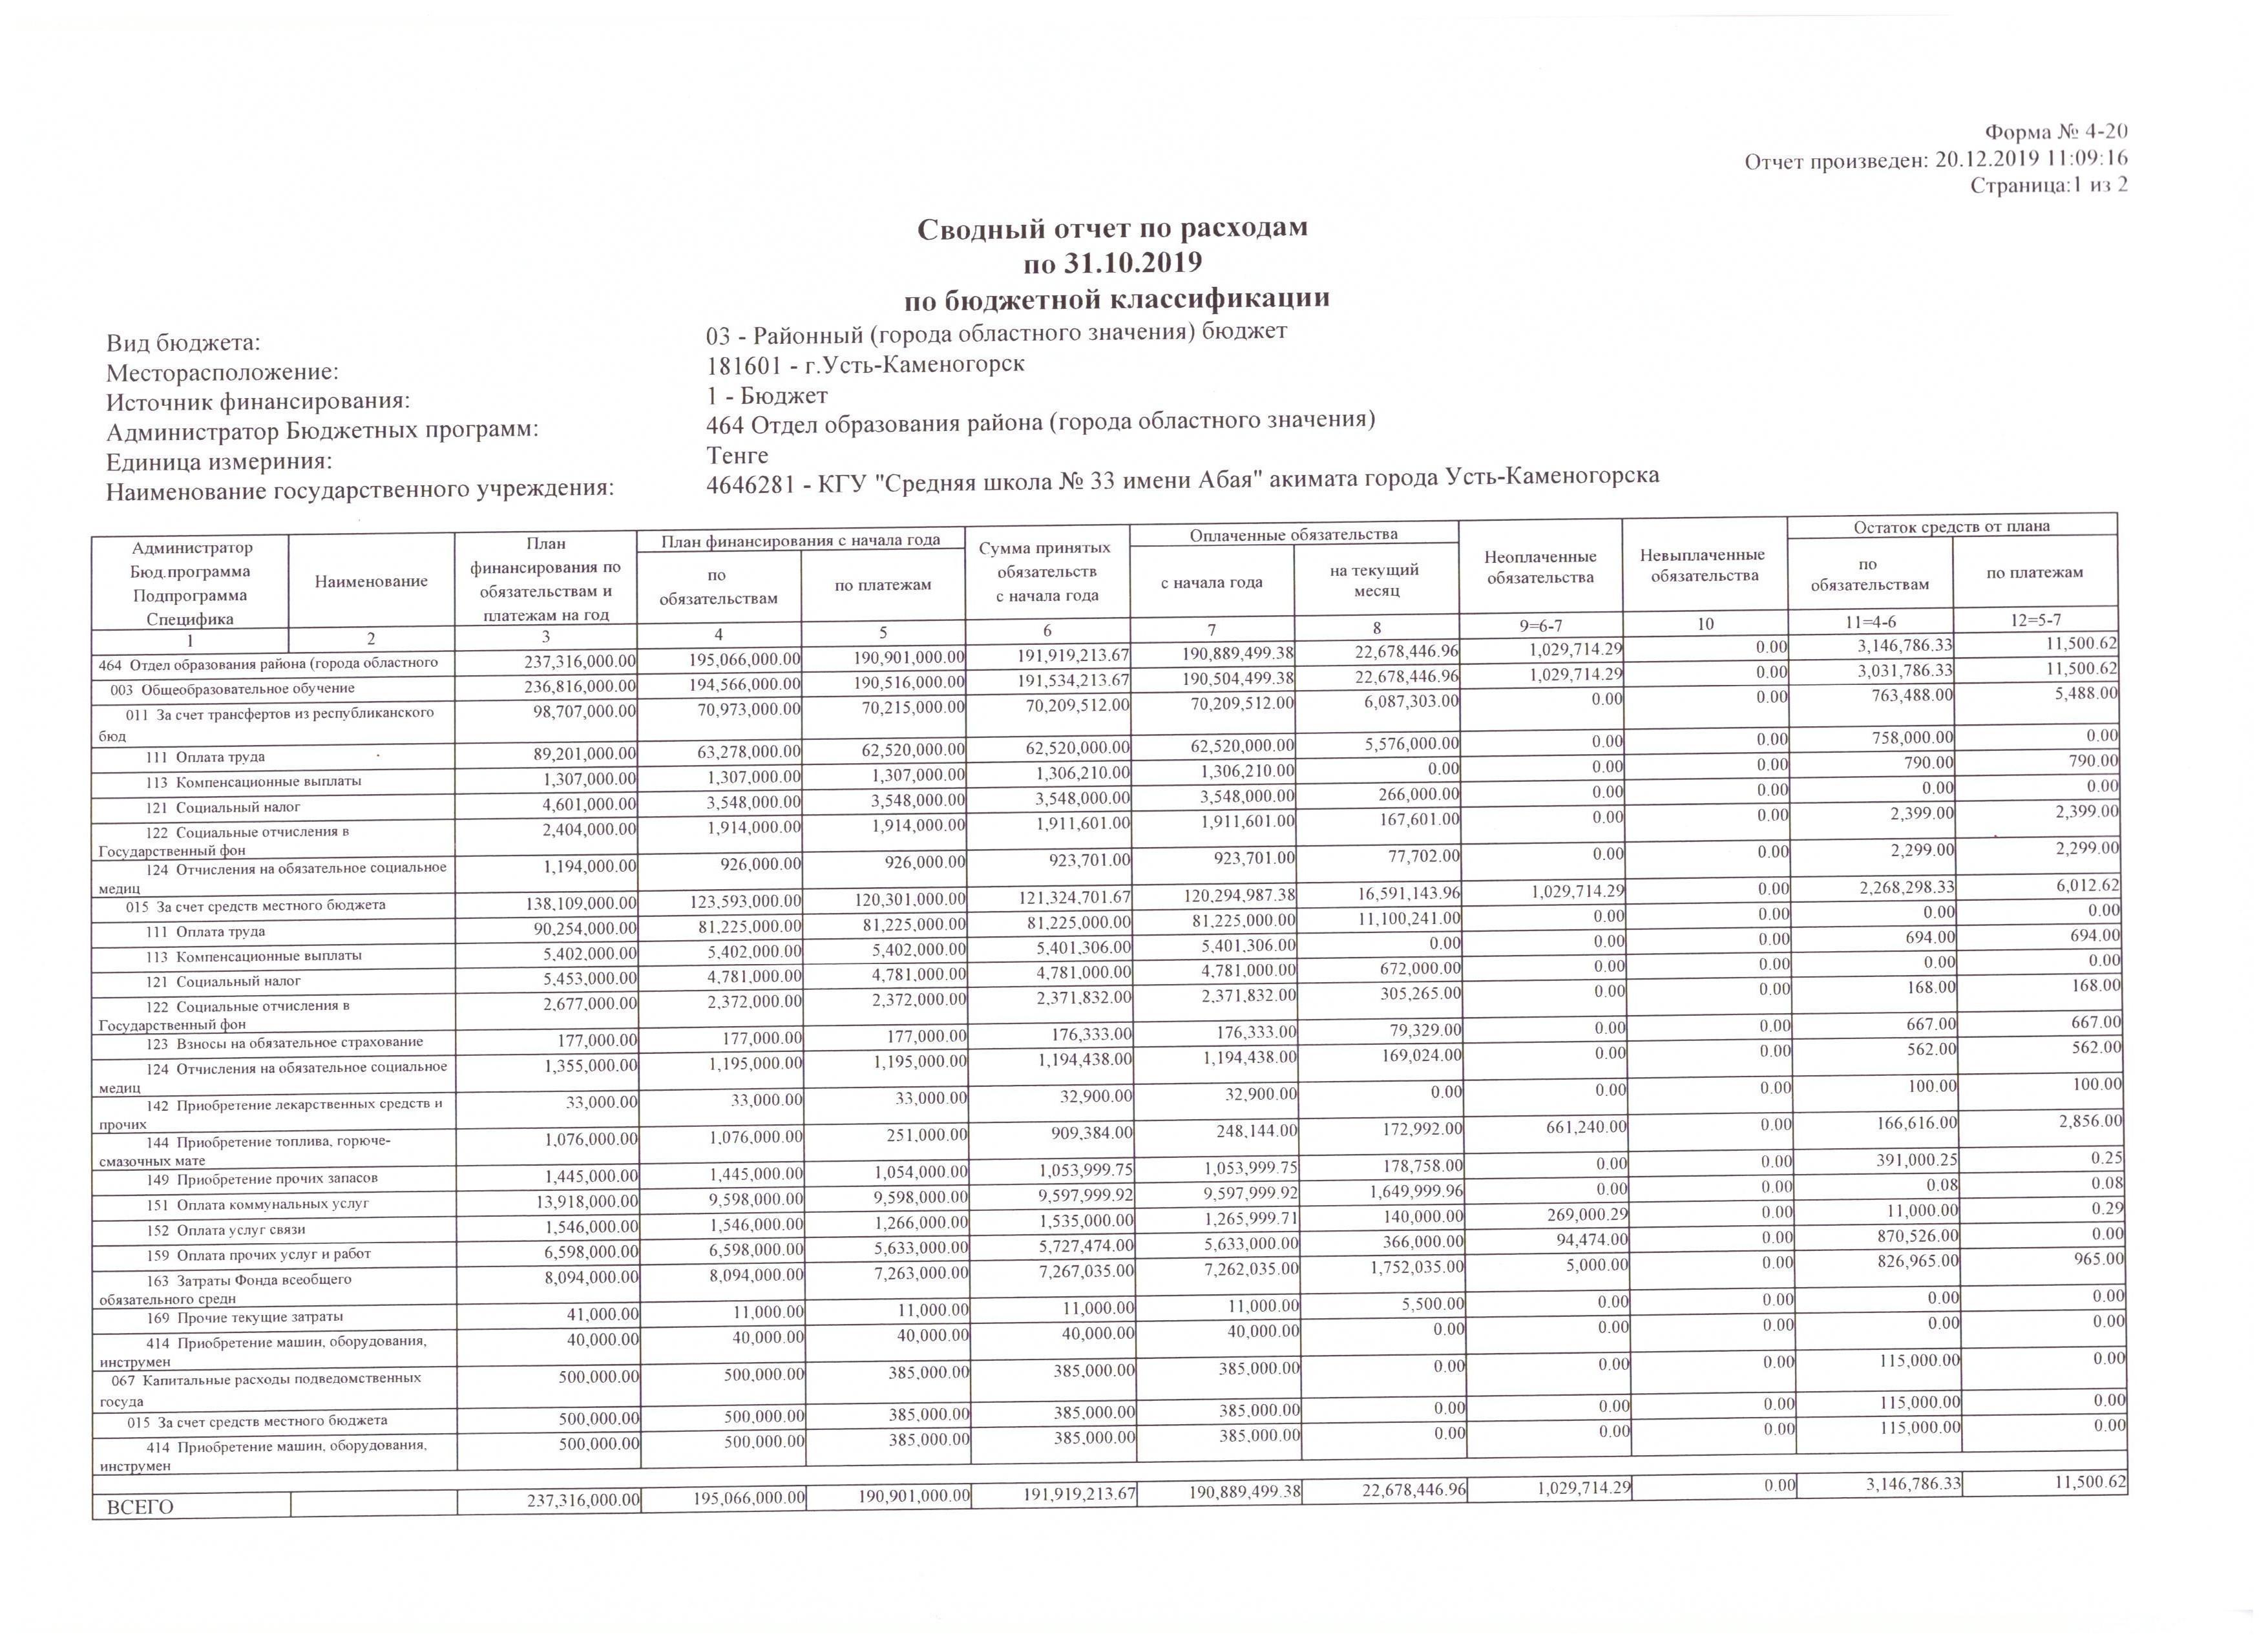 Сводный отчет по расходам по 31.10.2019 по бюджетной  классификации